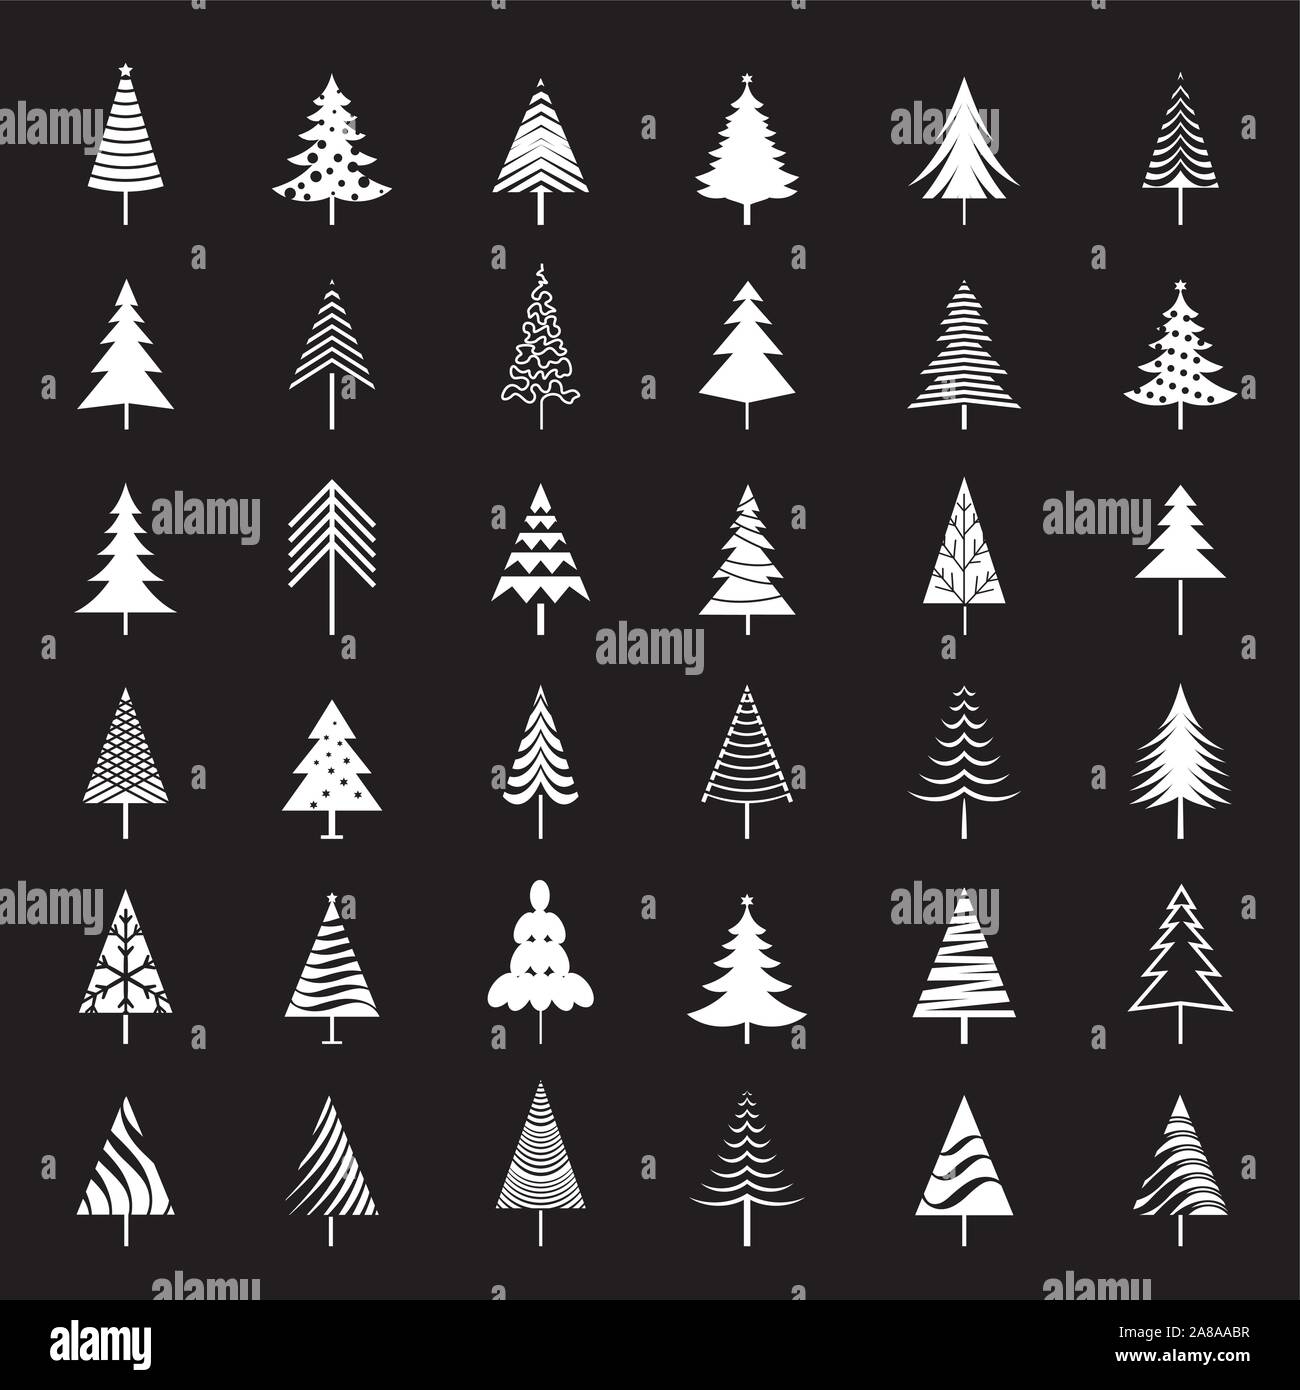 Satz von White Christmas Bäume. Winter design elemente und einfach Piktogramm Sammlung. Isolierte Vektor xmas Symbole und Illustration. Stock Vektor